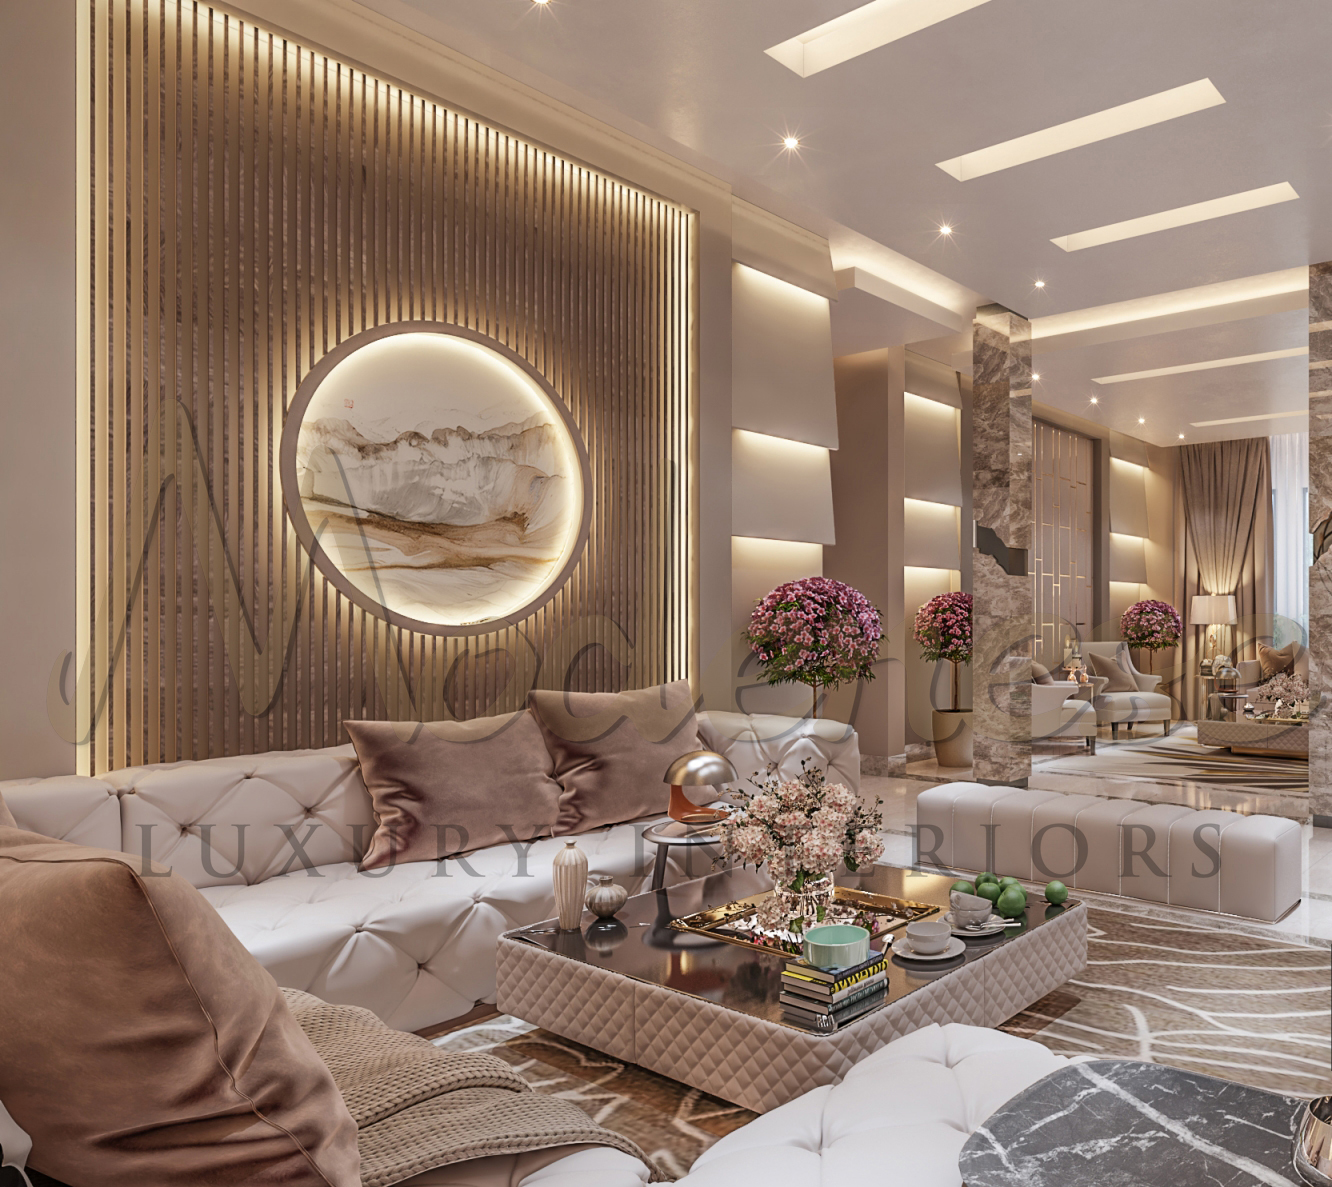 Exquisite Villa Interior design Project in Riyadh, Saudi Arabia